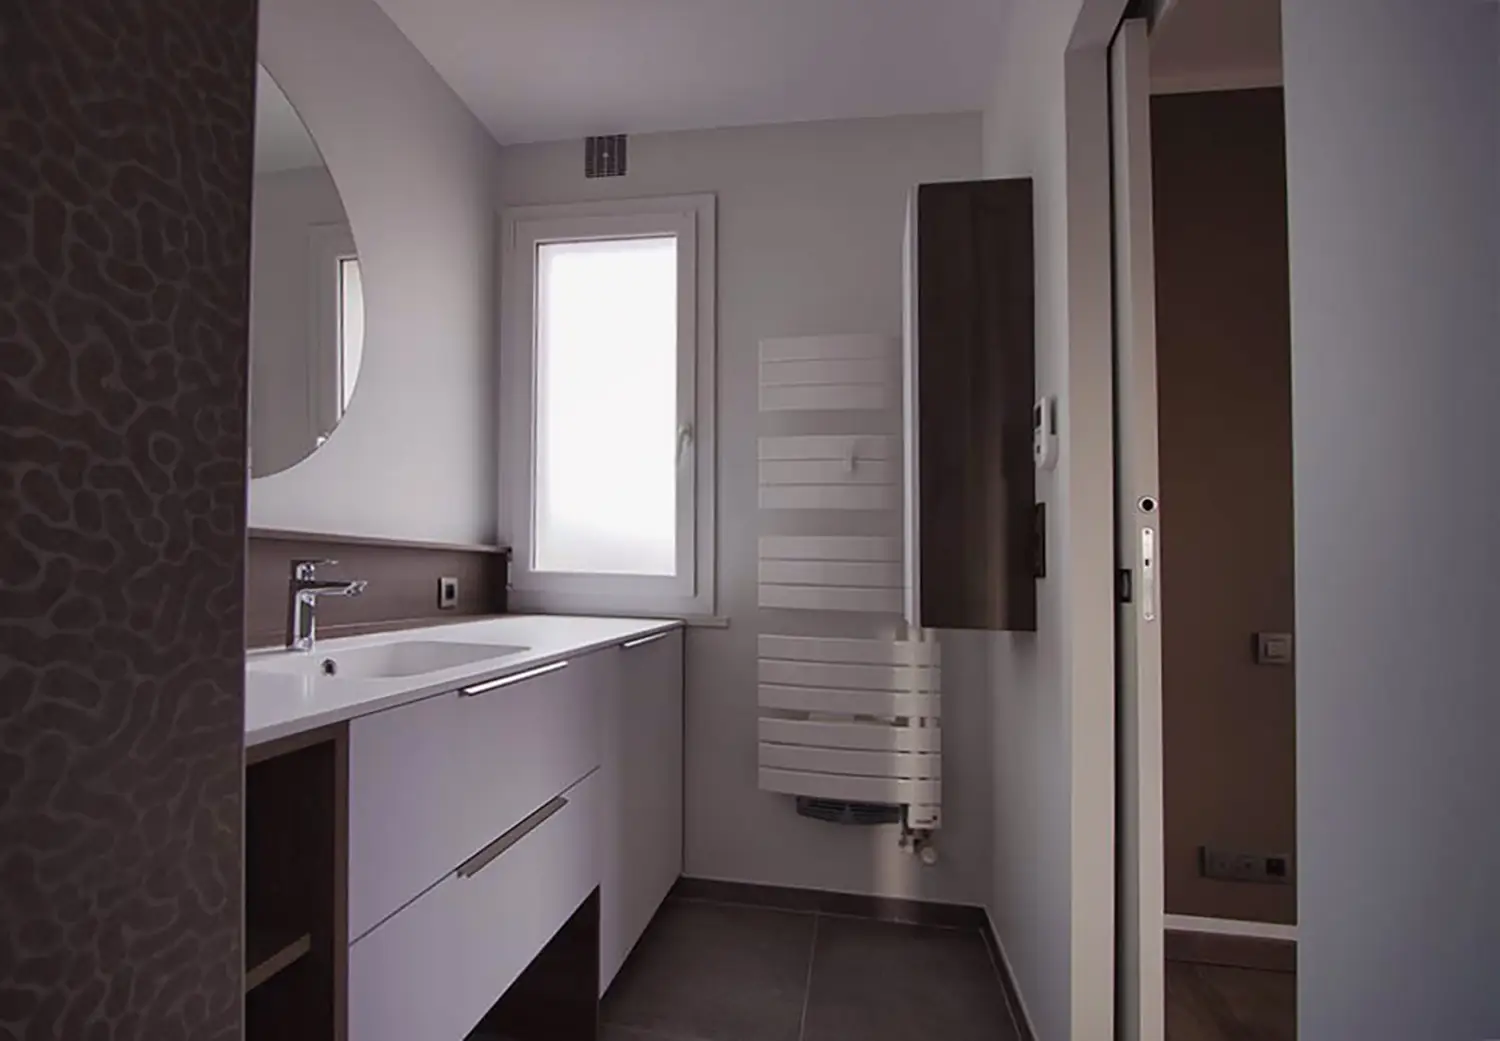 Photo d'ensemble de la salle de bain adjacente à la chambre et accessible par une porte coulissante ; projet de rénovation par le studio Elles Interior Design.